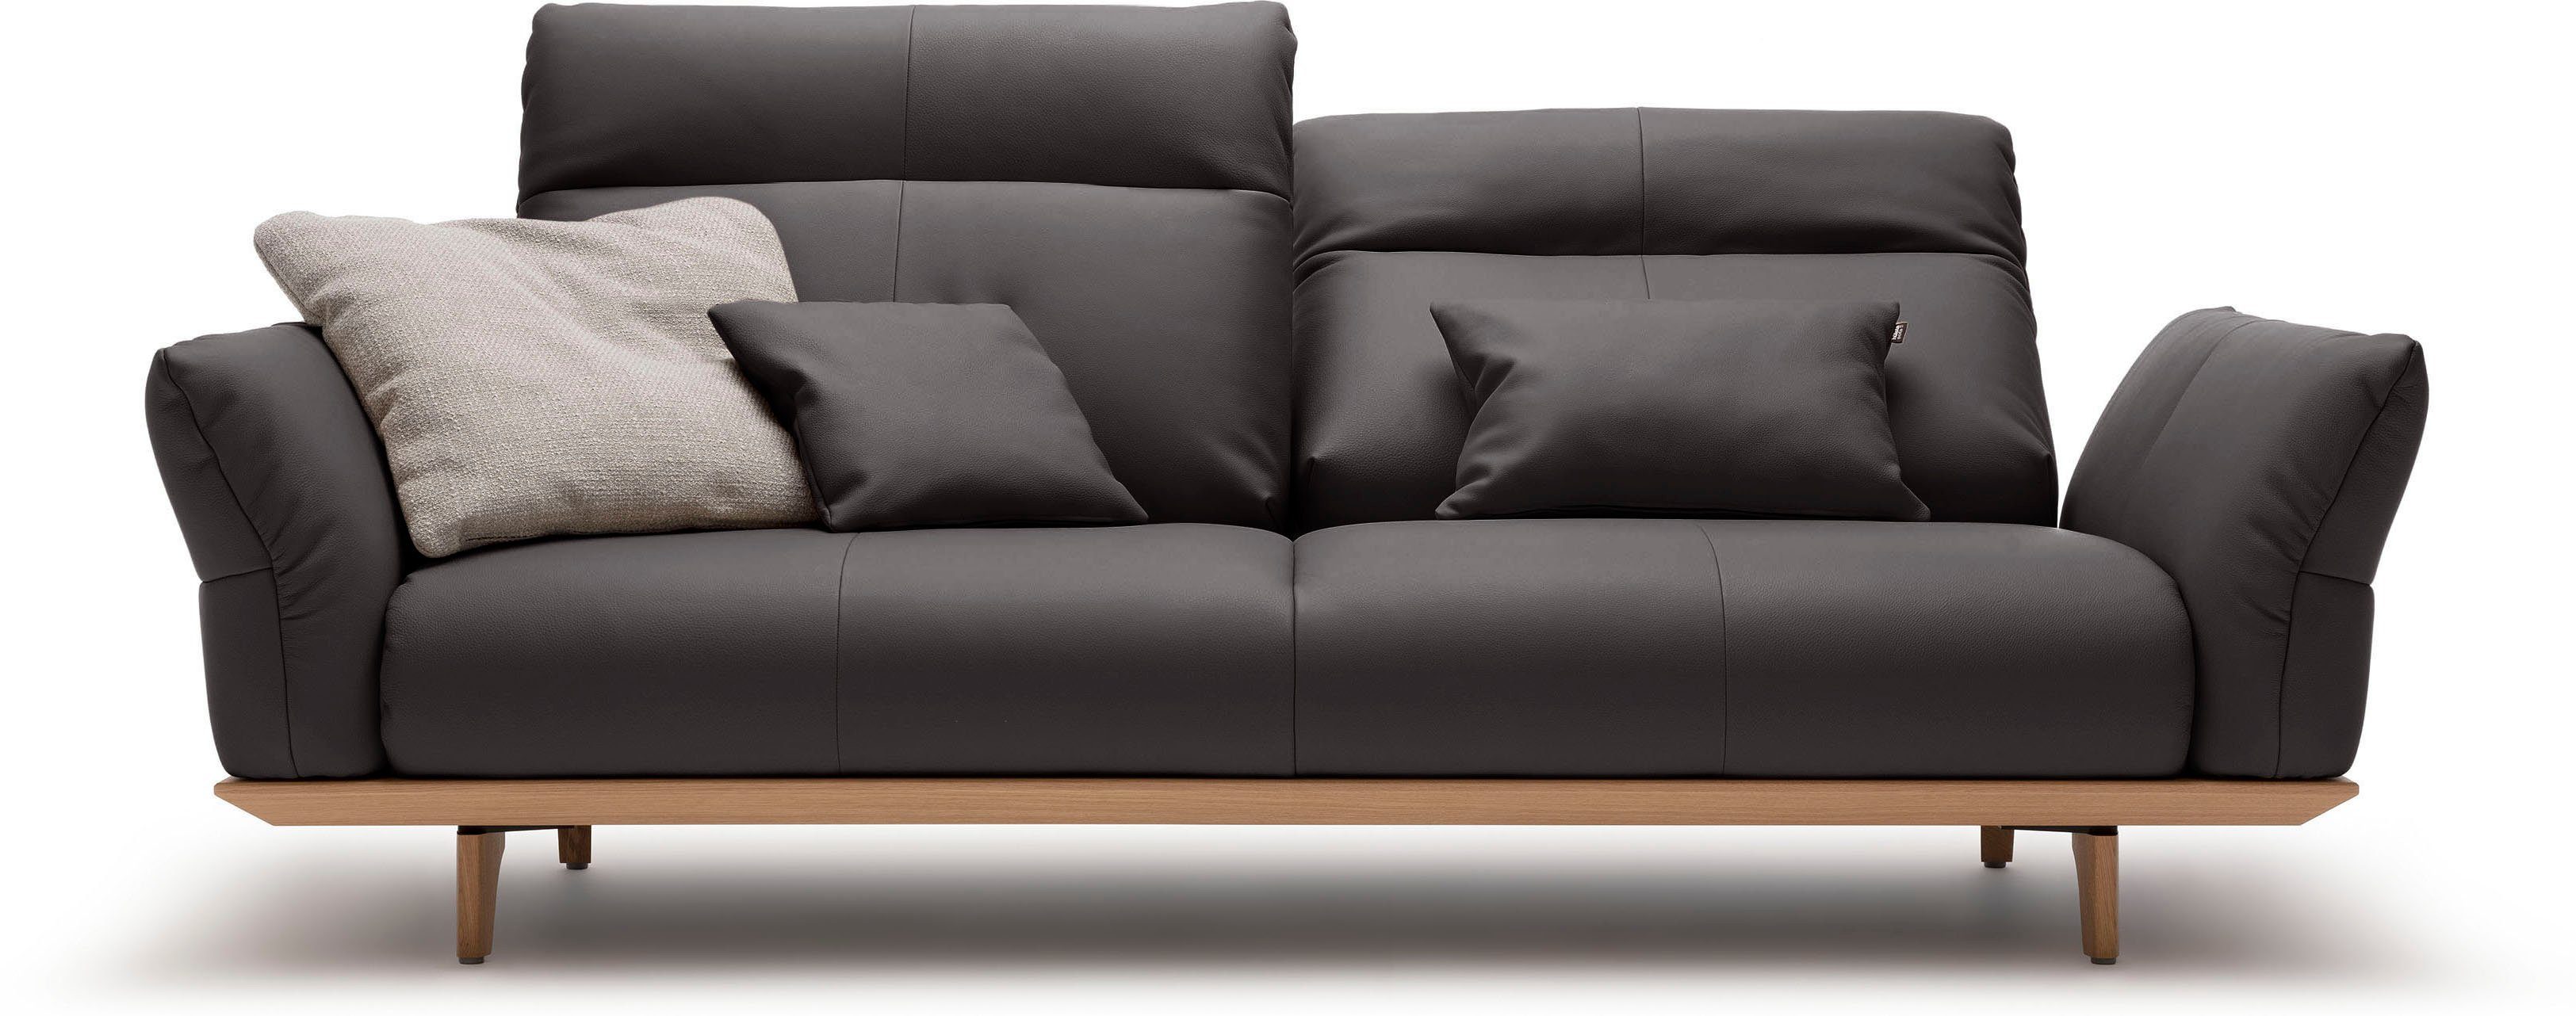 3-Sitzer sofa hülsta 208 Sockel hs.460, Füße Eiche natur, cm Breite in Eiche,